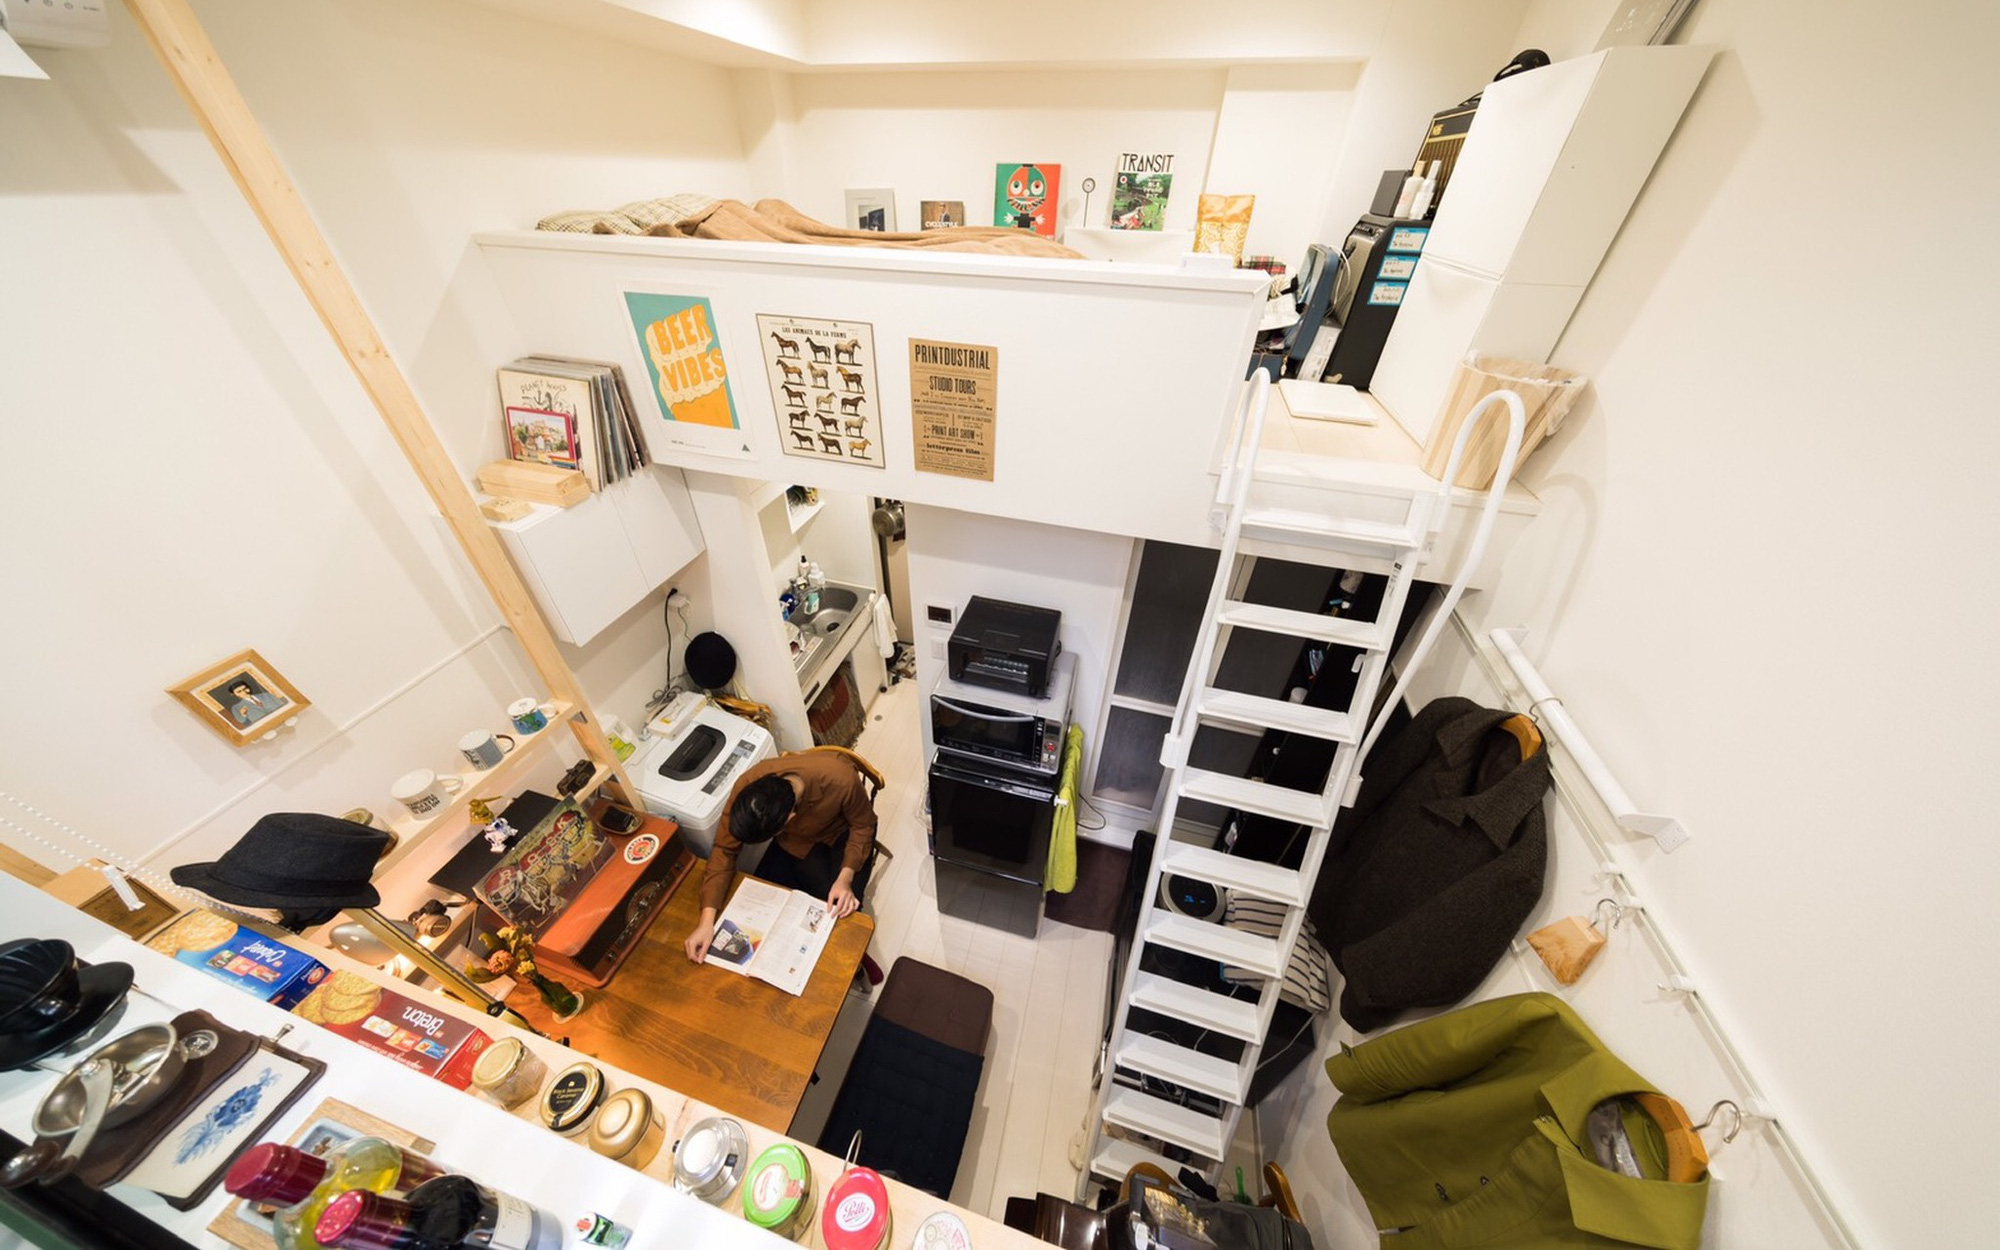 Thăm những căn hộ siêu nhỏ chỉ có 4m² được sử dụng phổ biến bởi những người trẻ tại Nhật